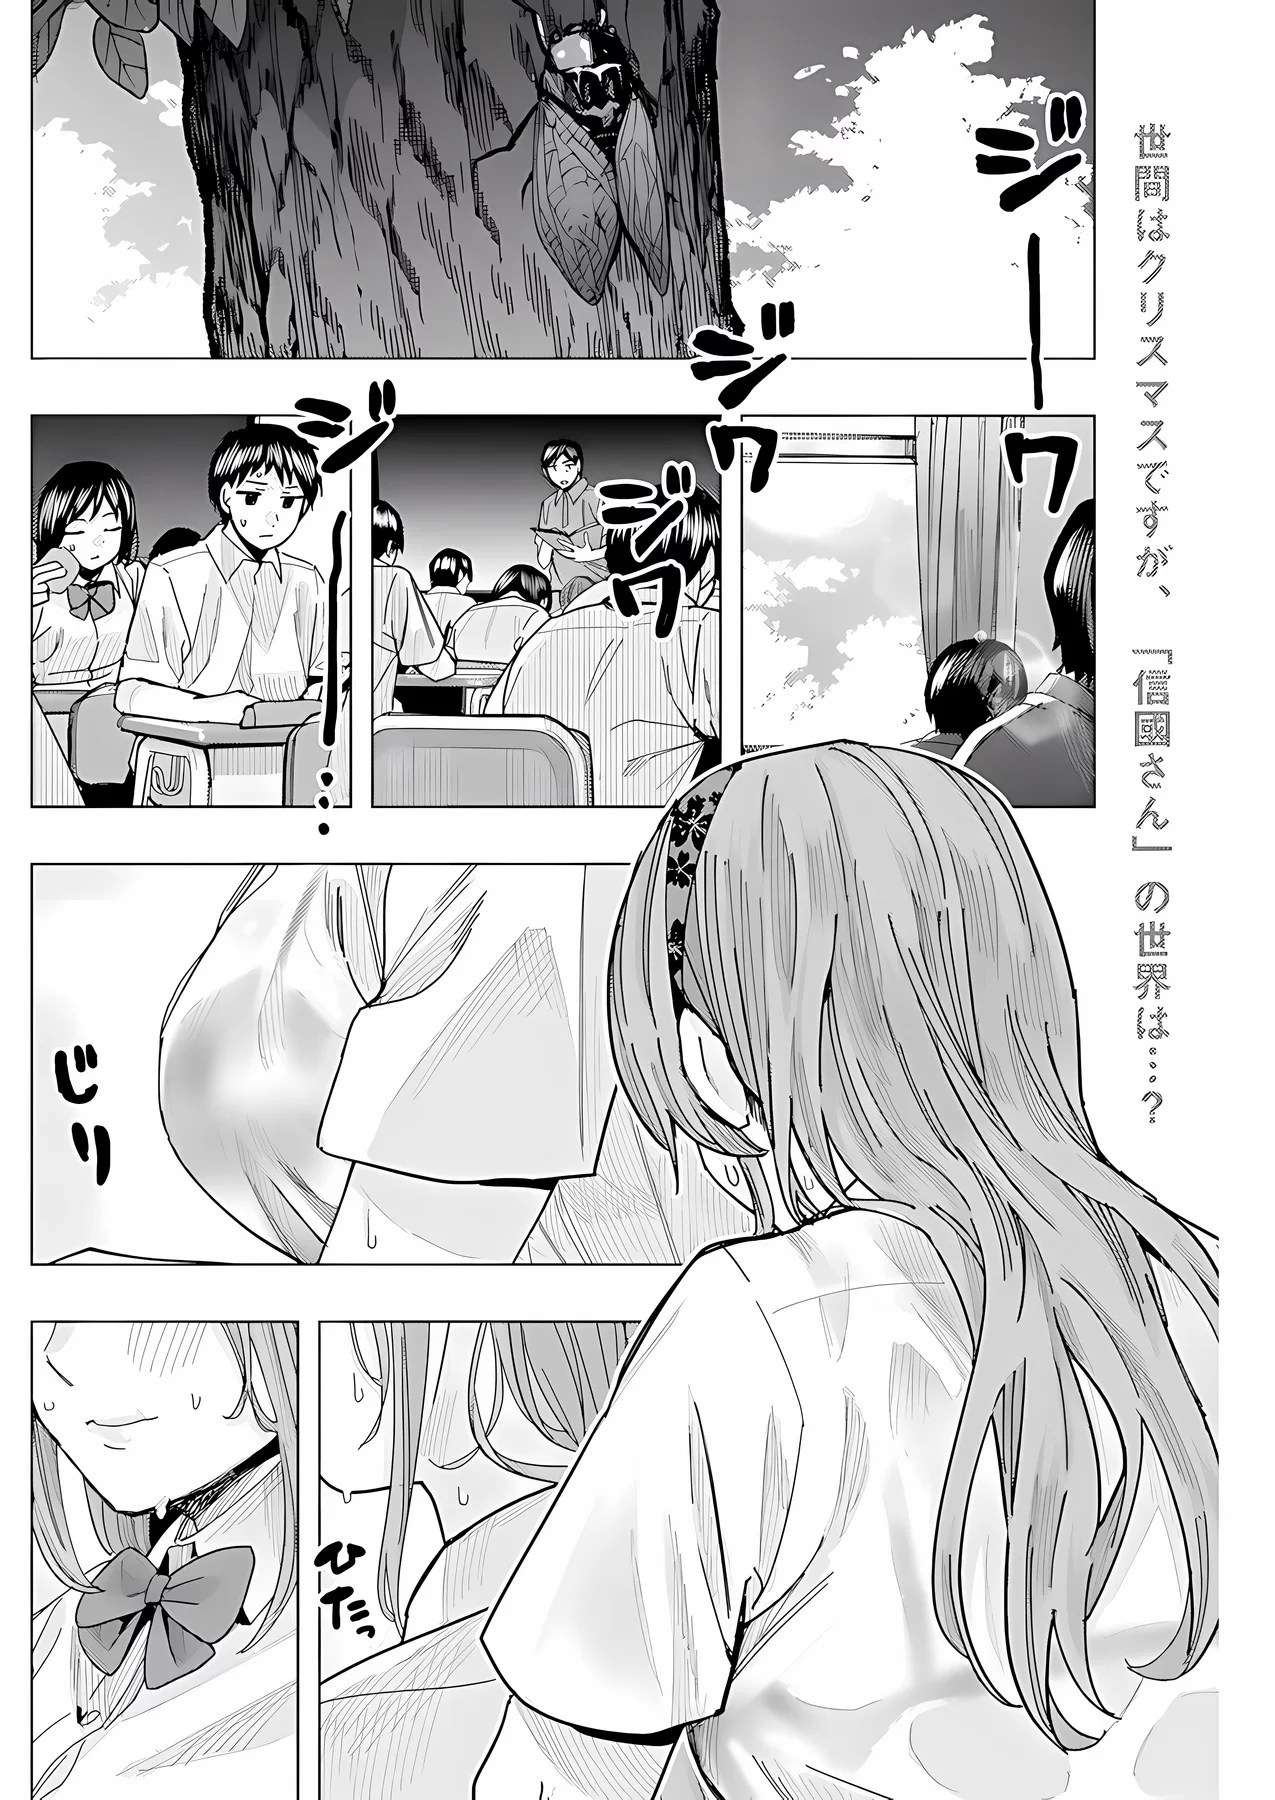 "nobukuni-San" Does She Like Me? - chapter 26 - #3